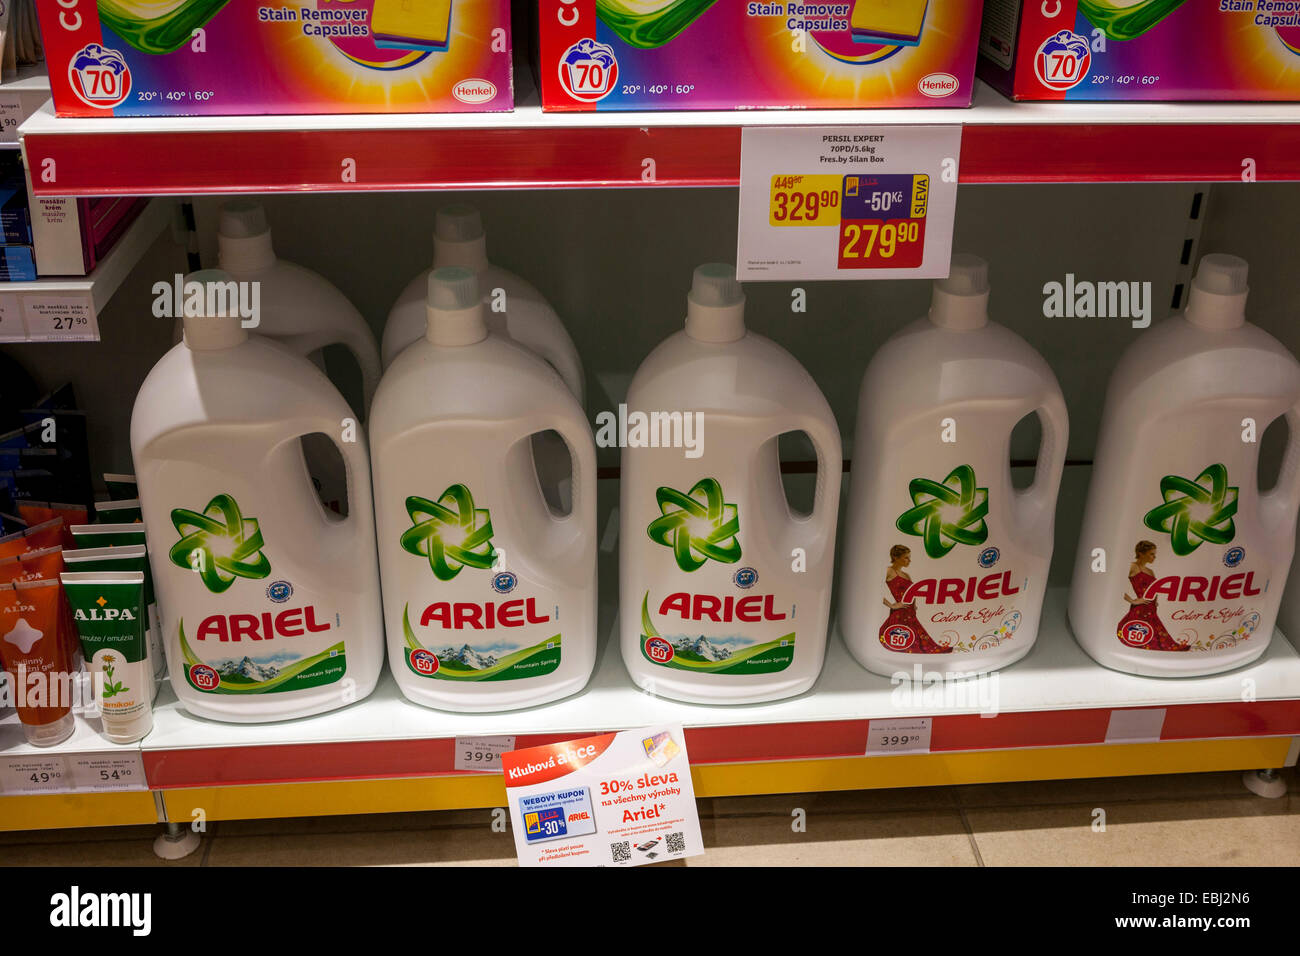 Waschpulver Ariel in einem Supermarkt Regal Tschechische Republik Stockfoto